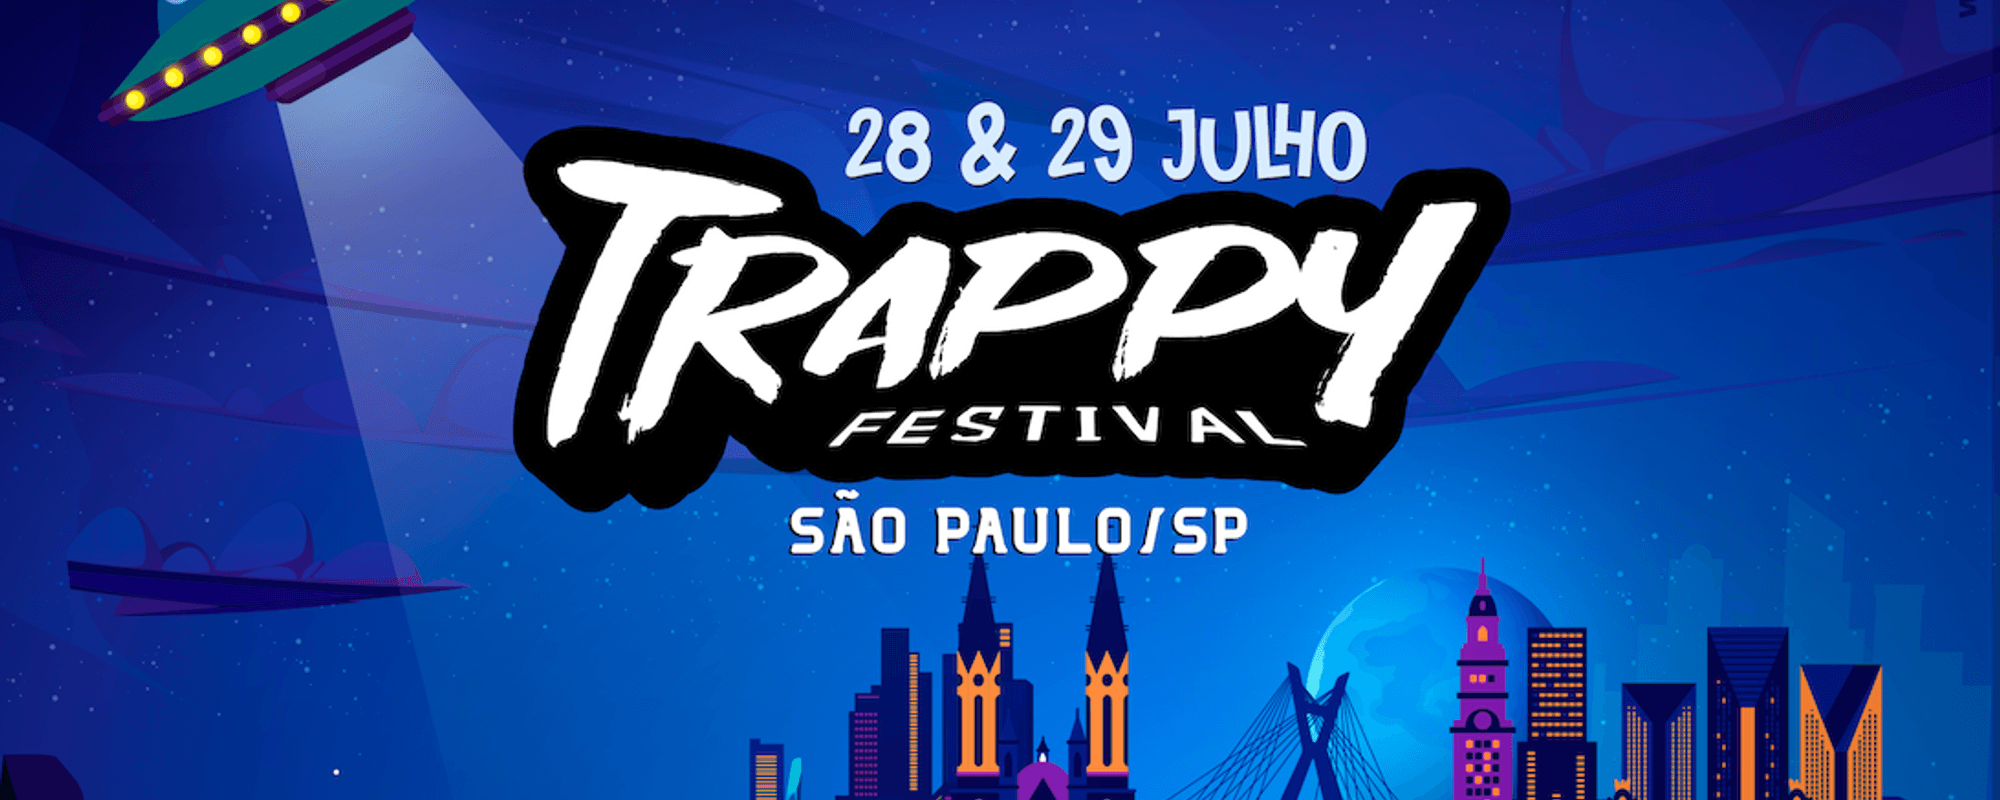 Trappy Festival 3rd Edition